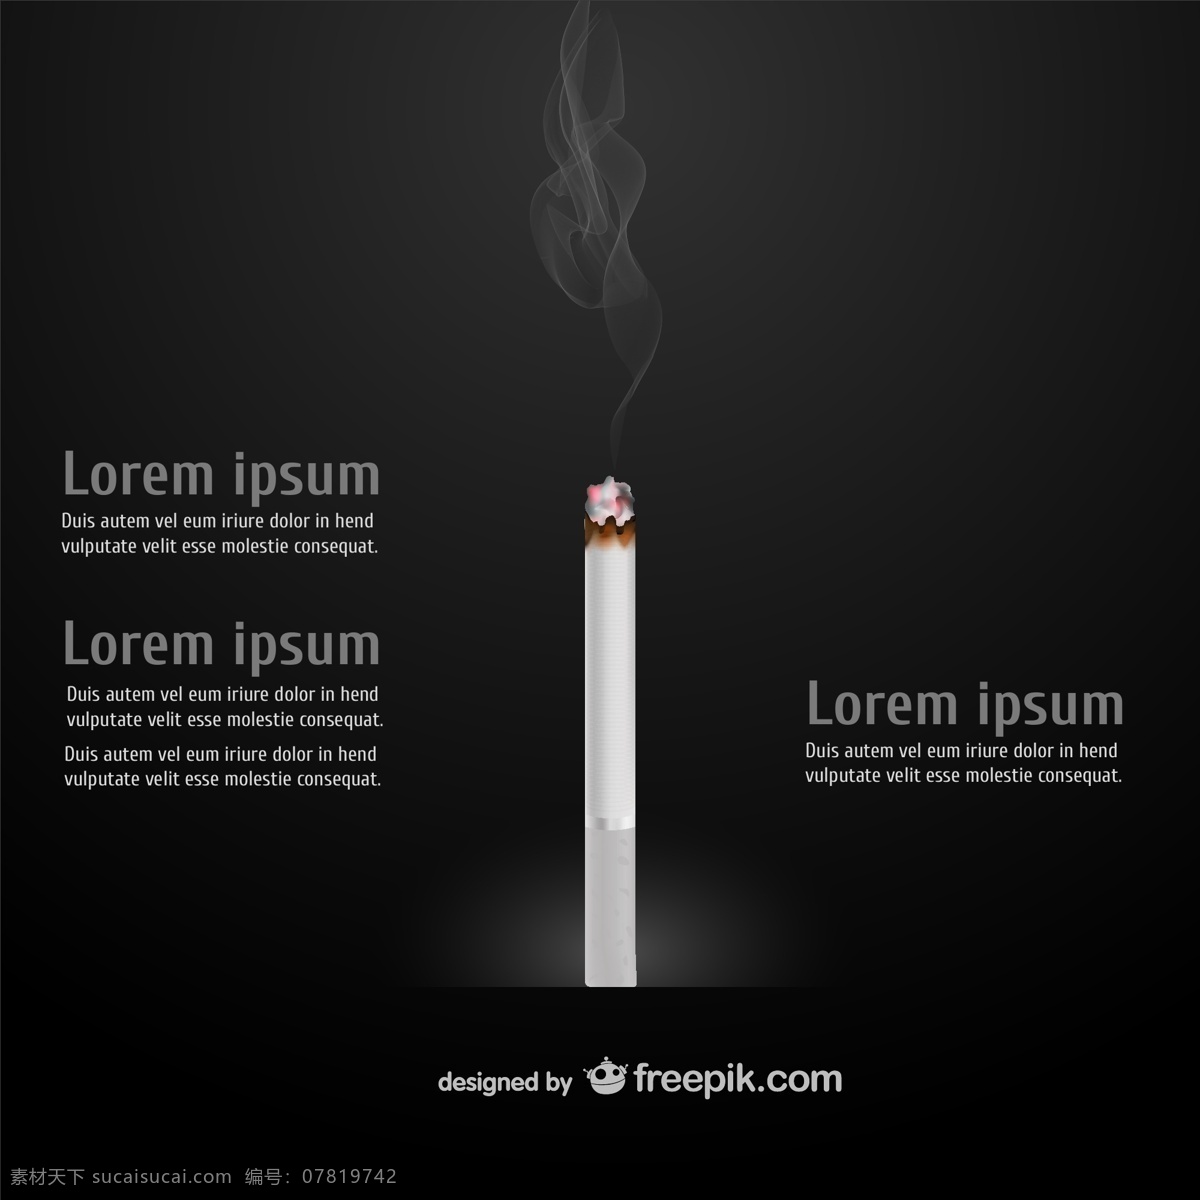 香烟 信息 图表 图标 模板 烟雾 图形 法律 图形设计 插图 符号 吸烟 蒸汽 图像 概念 雪茄 烟草 成瘾 黑色